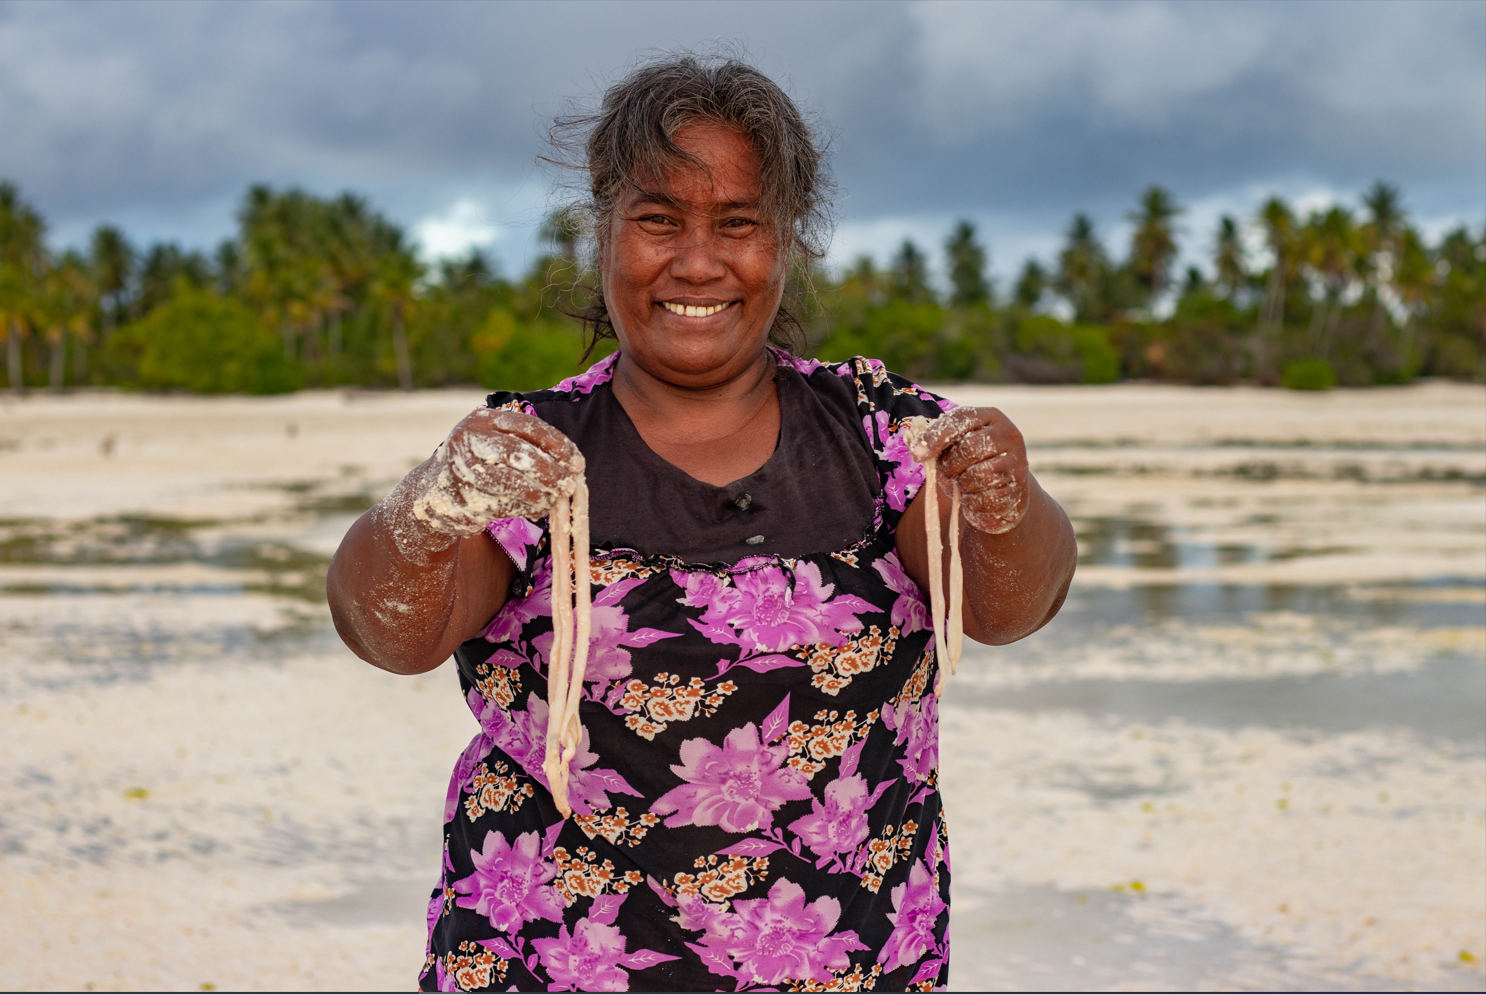 Tabwena - women seaworm fishing in Kiribati.